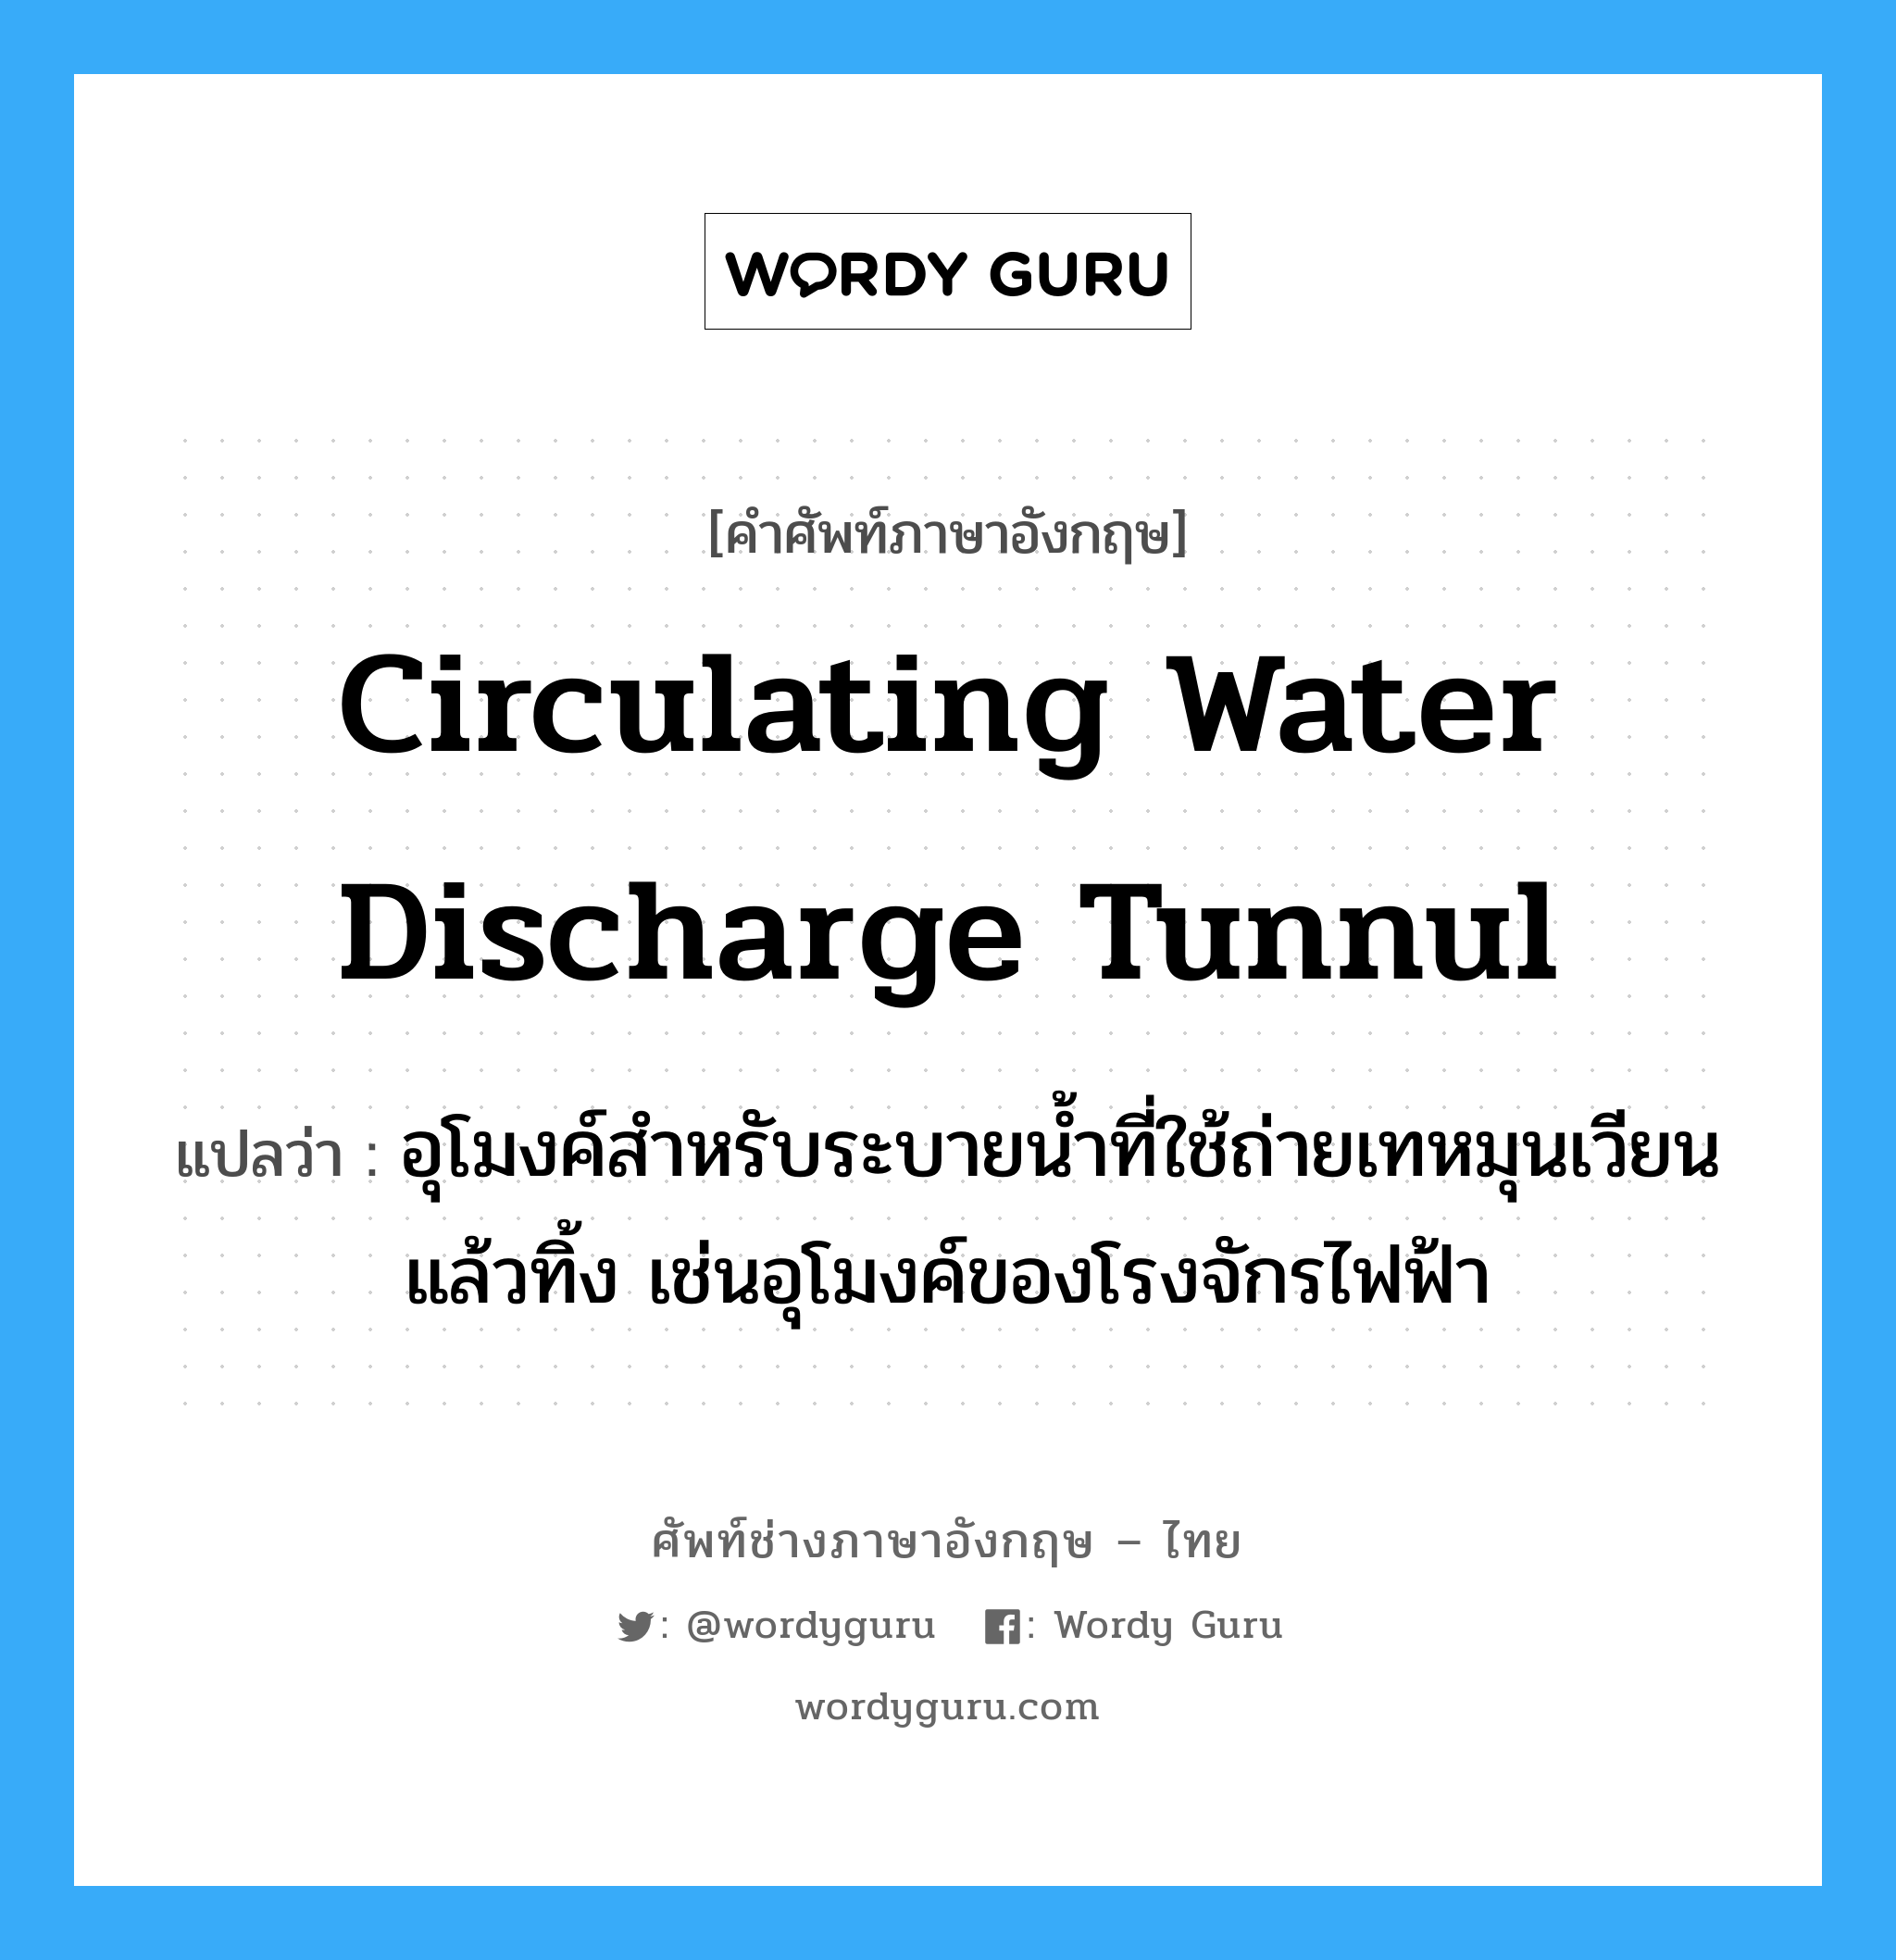 circulating water discharge tunnul แปลว่า?, คำศัพท์ช่างภาษาอังกฤษ - ไทย circulating water discharge tunnul คำศัพท์ภาษาอังกฤษ circulating water discharge tunnul แปลว่า อุโมงค์สำหรับระบายน้ำที่ใช้ถ่ายเทหมุนเวียนแล้วทิ้ง เช่นอุโมงค์ของโรงจักรไฟฟ้า